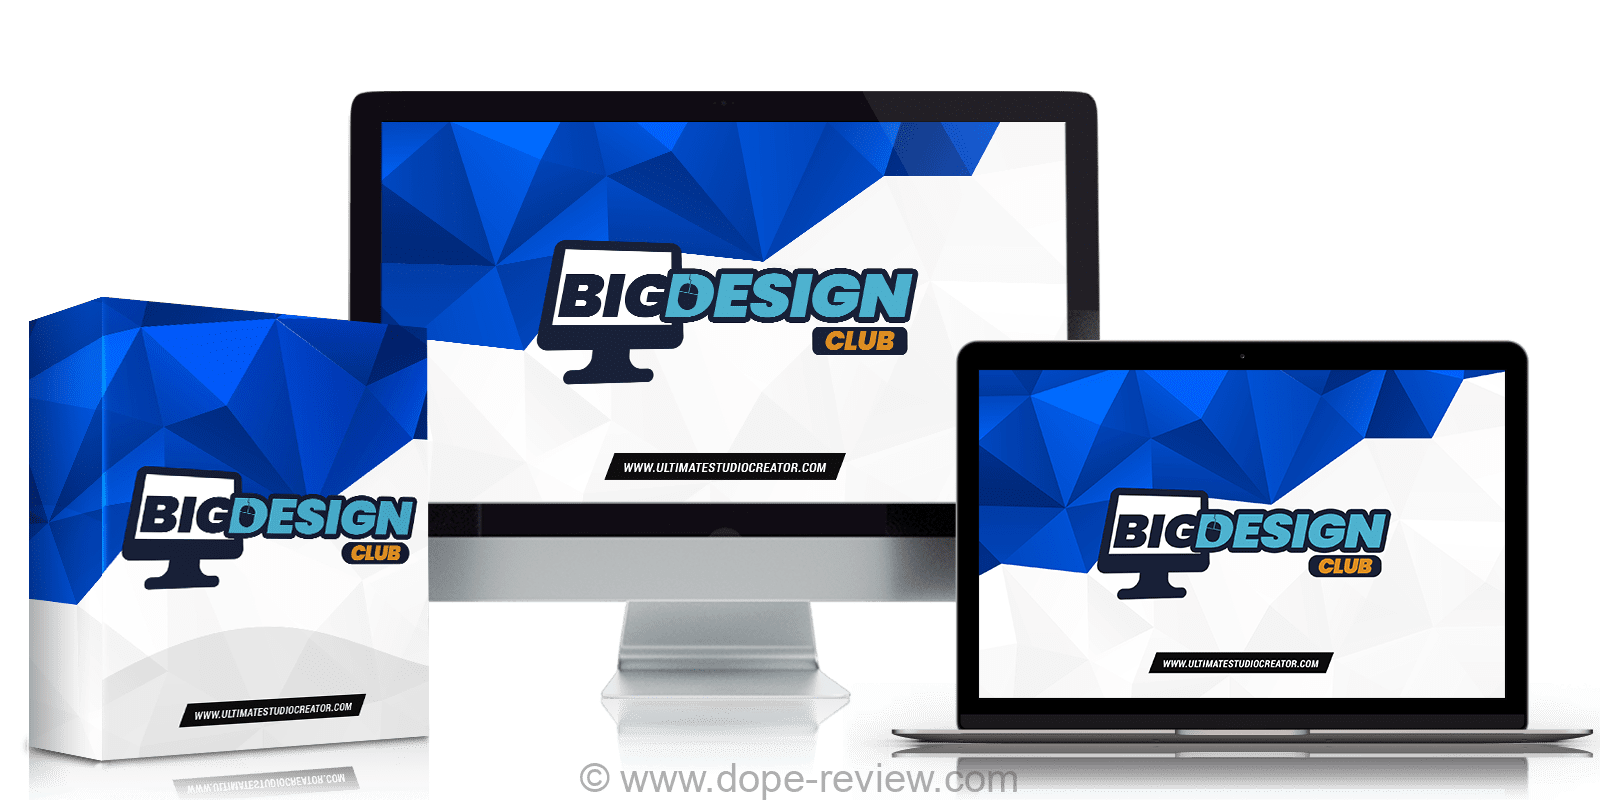 Big Design Club Review